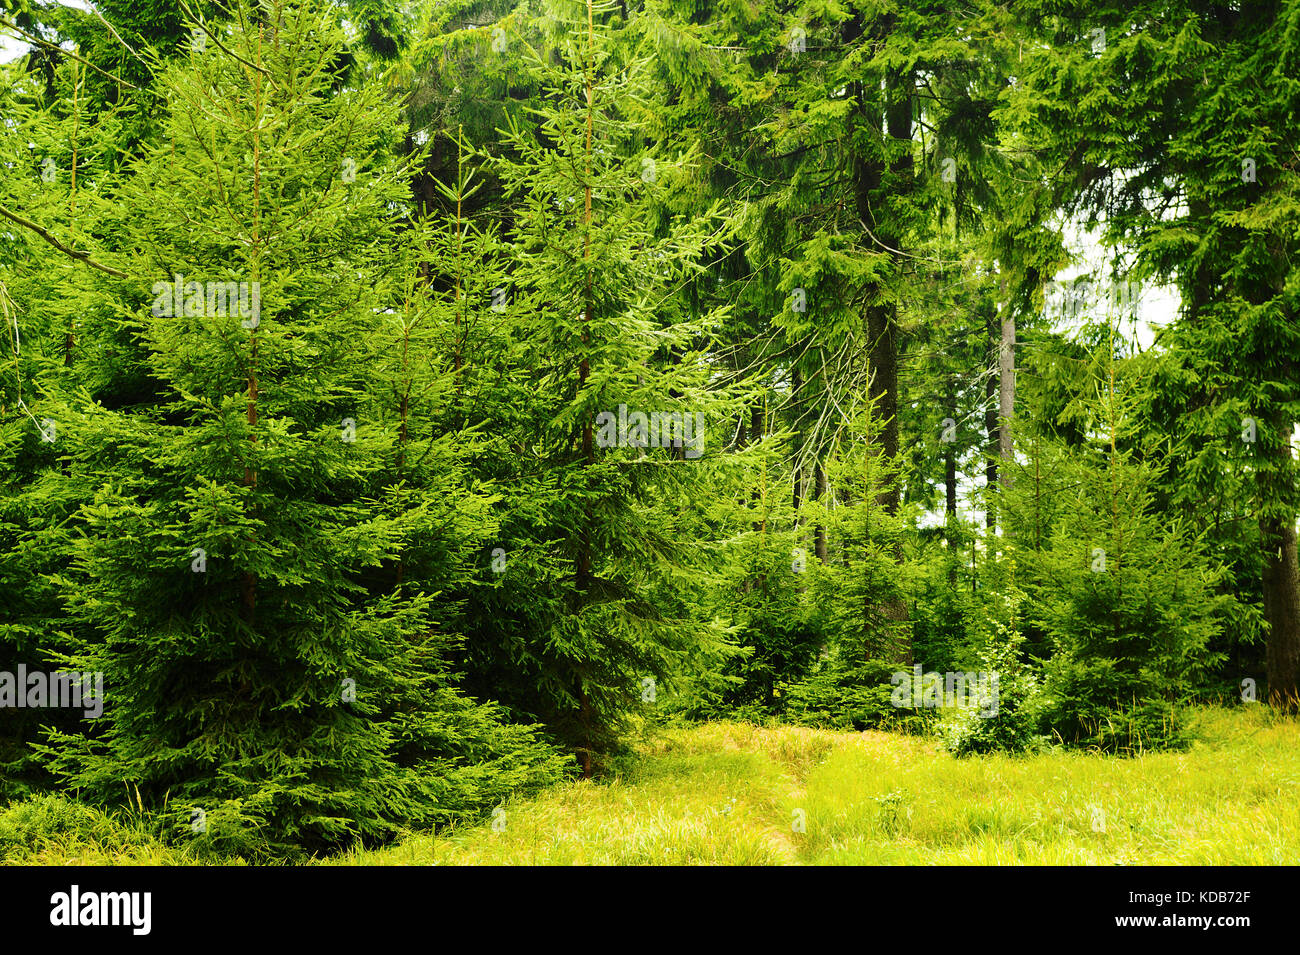 En evergreen piceas verde bosque de coníferas. joven picea abies árboles que crecen en los bosques en las montañas owl parque paisajista, los sudetes, al sur-oeste de Polonia. Foto de stock